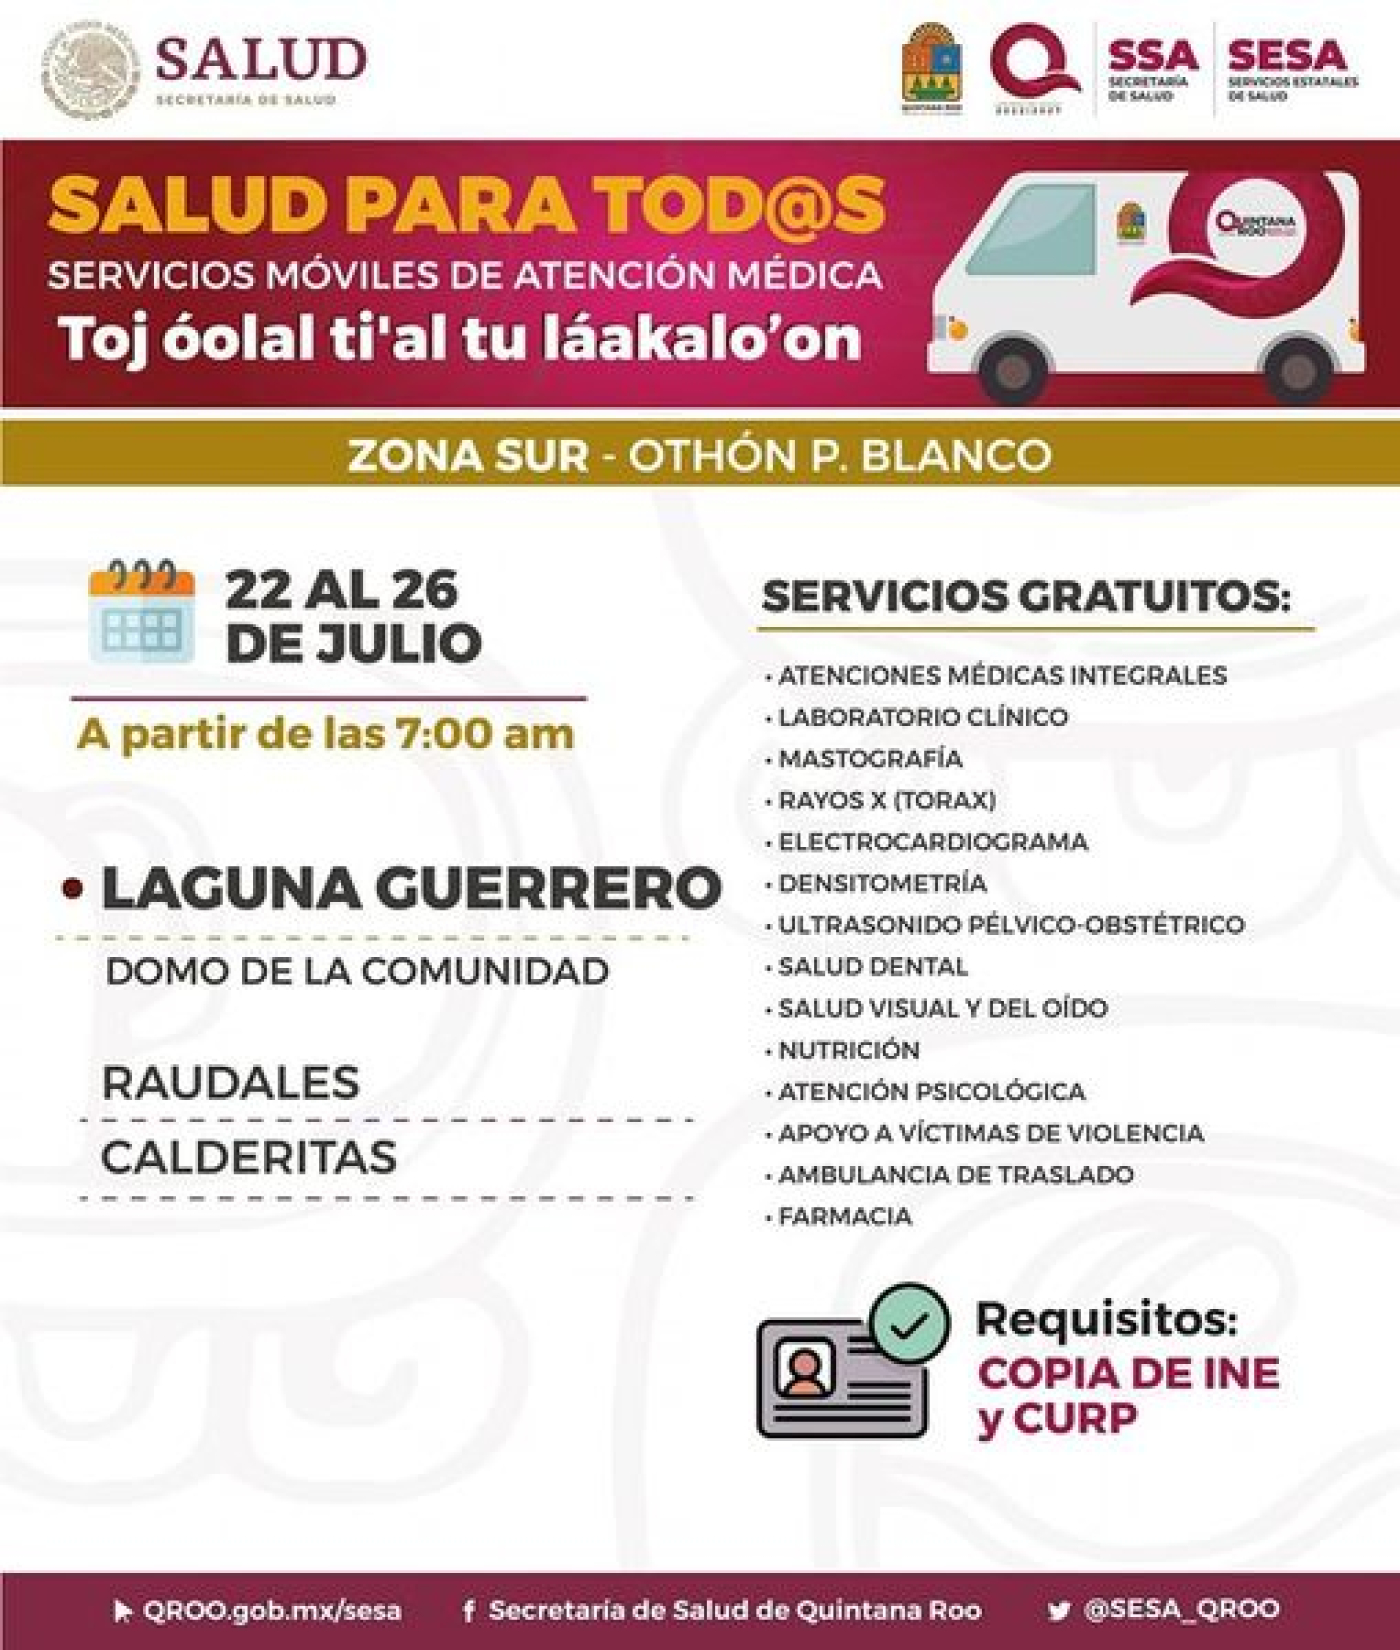 Más de 300 mil atenciones con Caravanas médicas móviles “Salud para Tod@s” en Quintana Roo